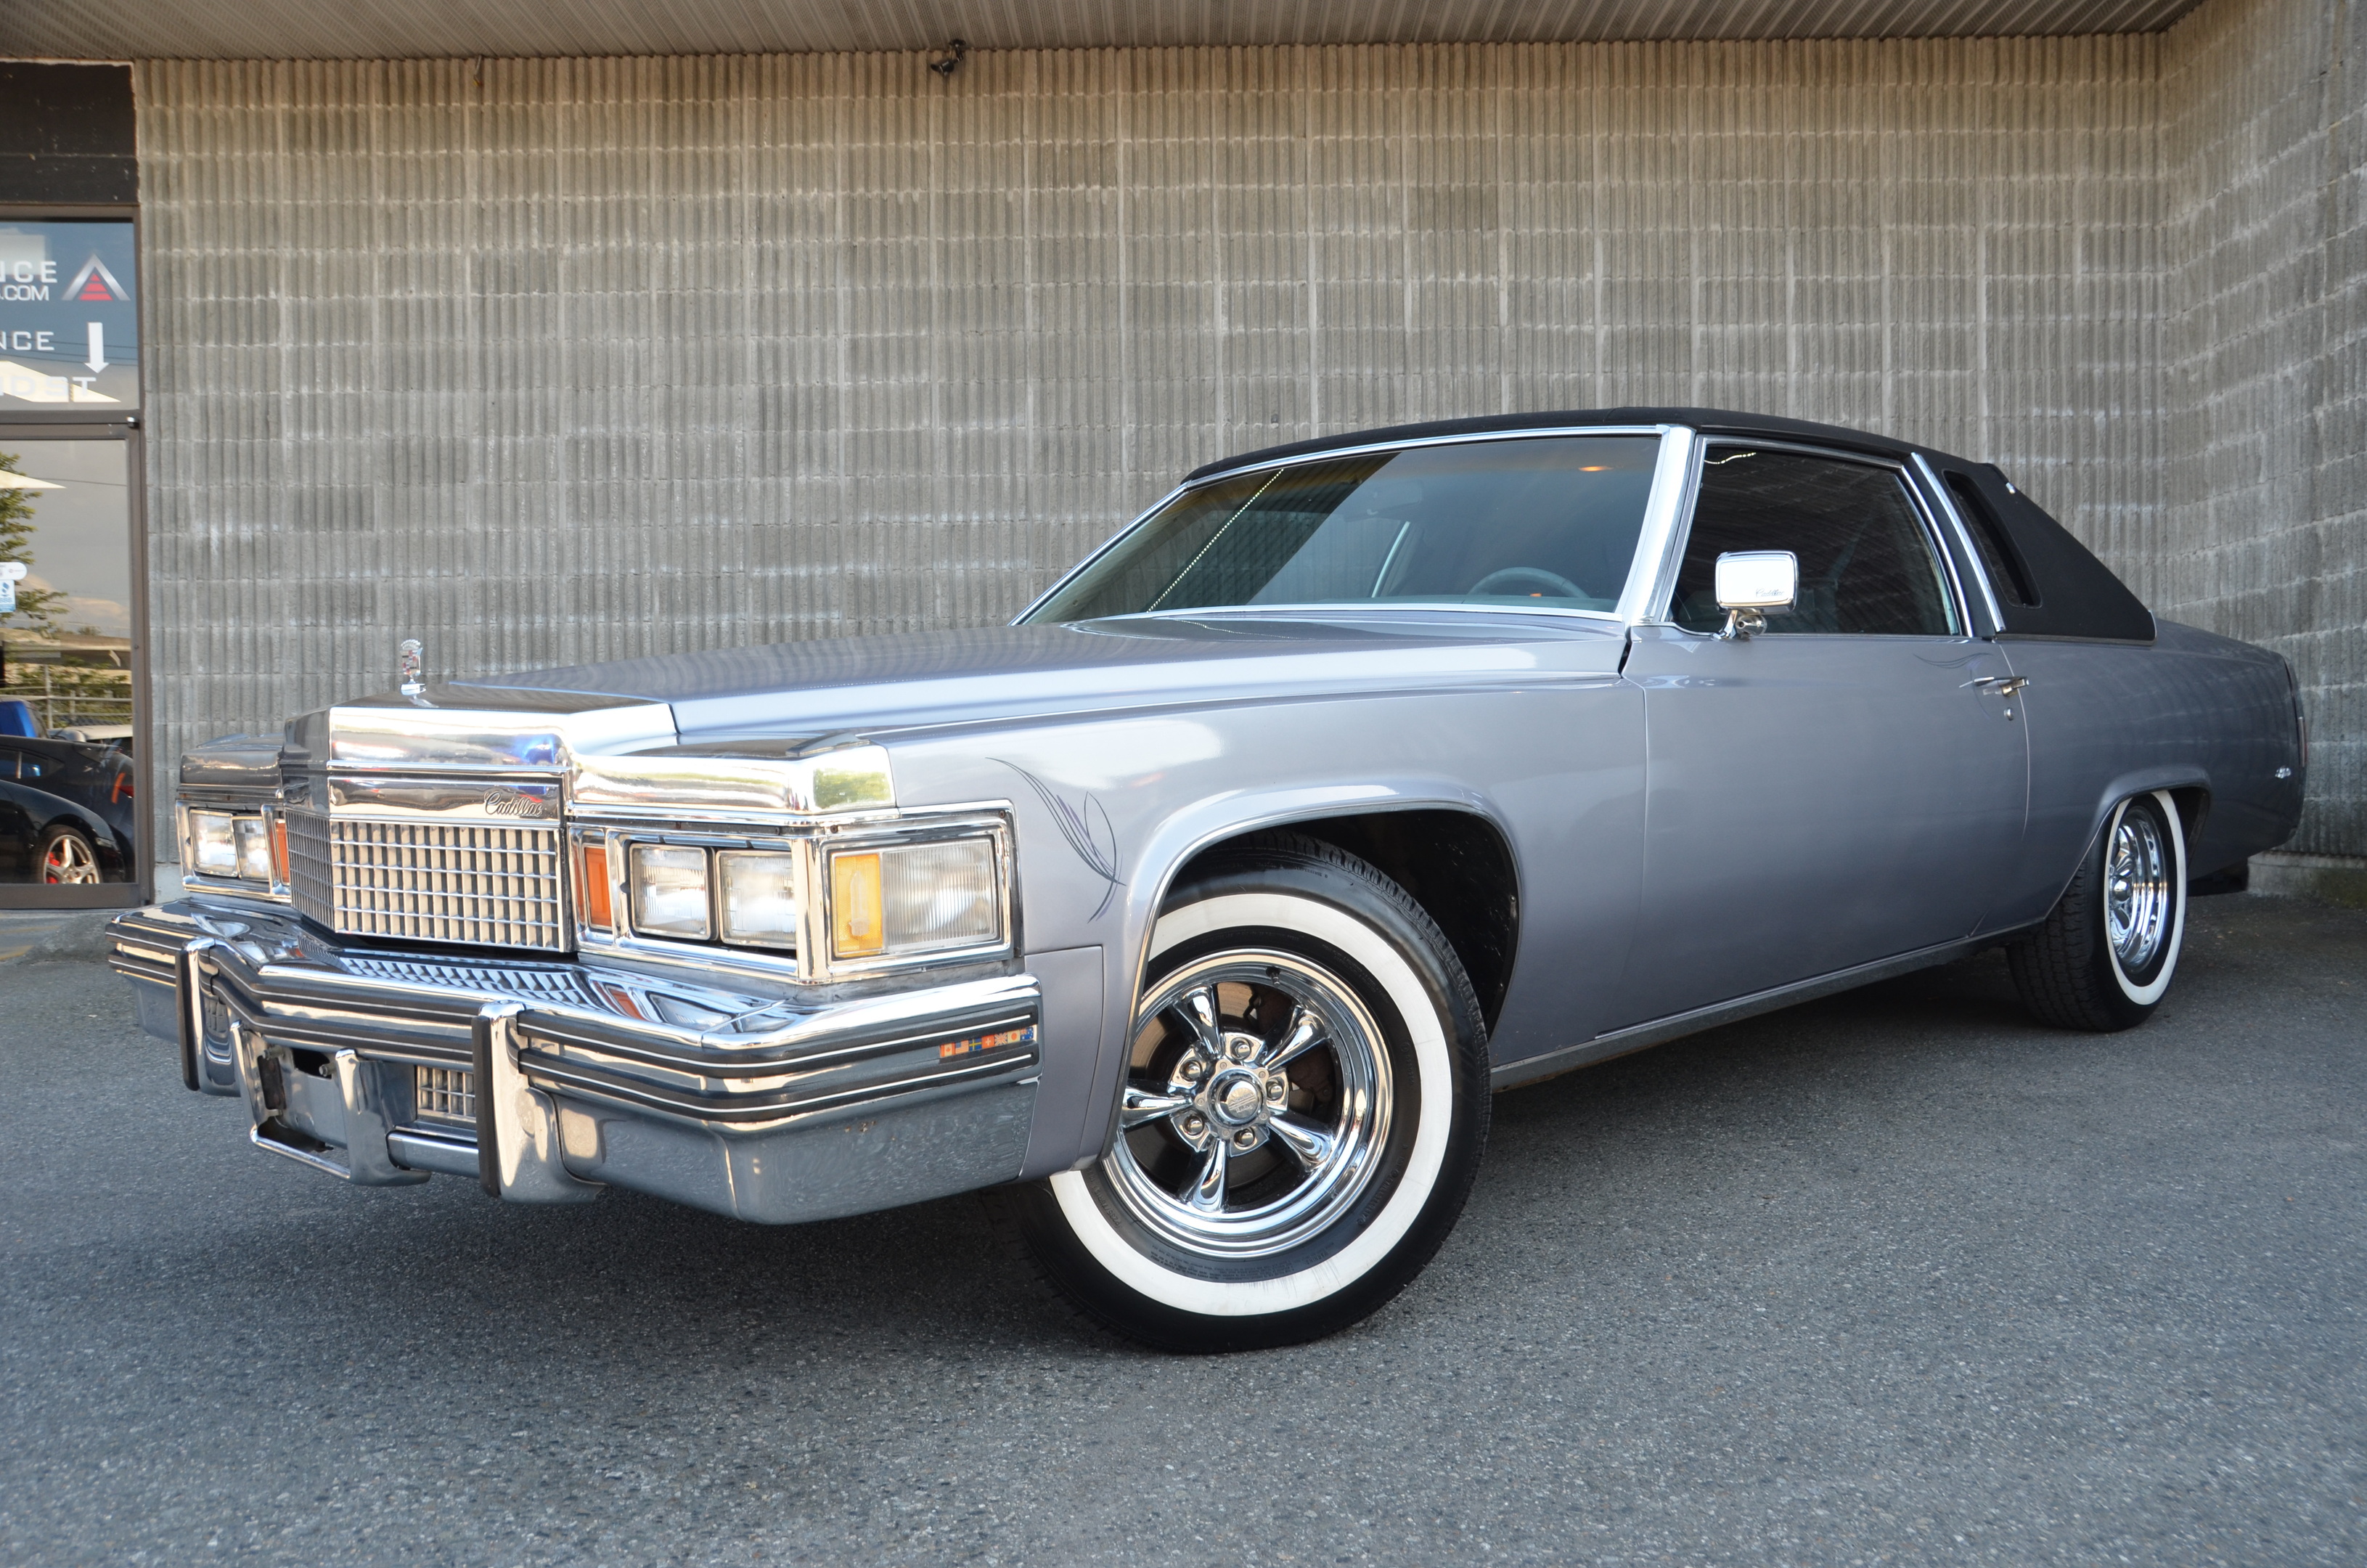 1979 Cadillac DeVille Phaeton, Original 425 Big Block